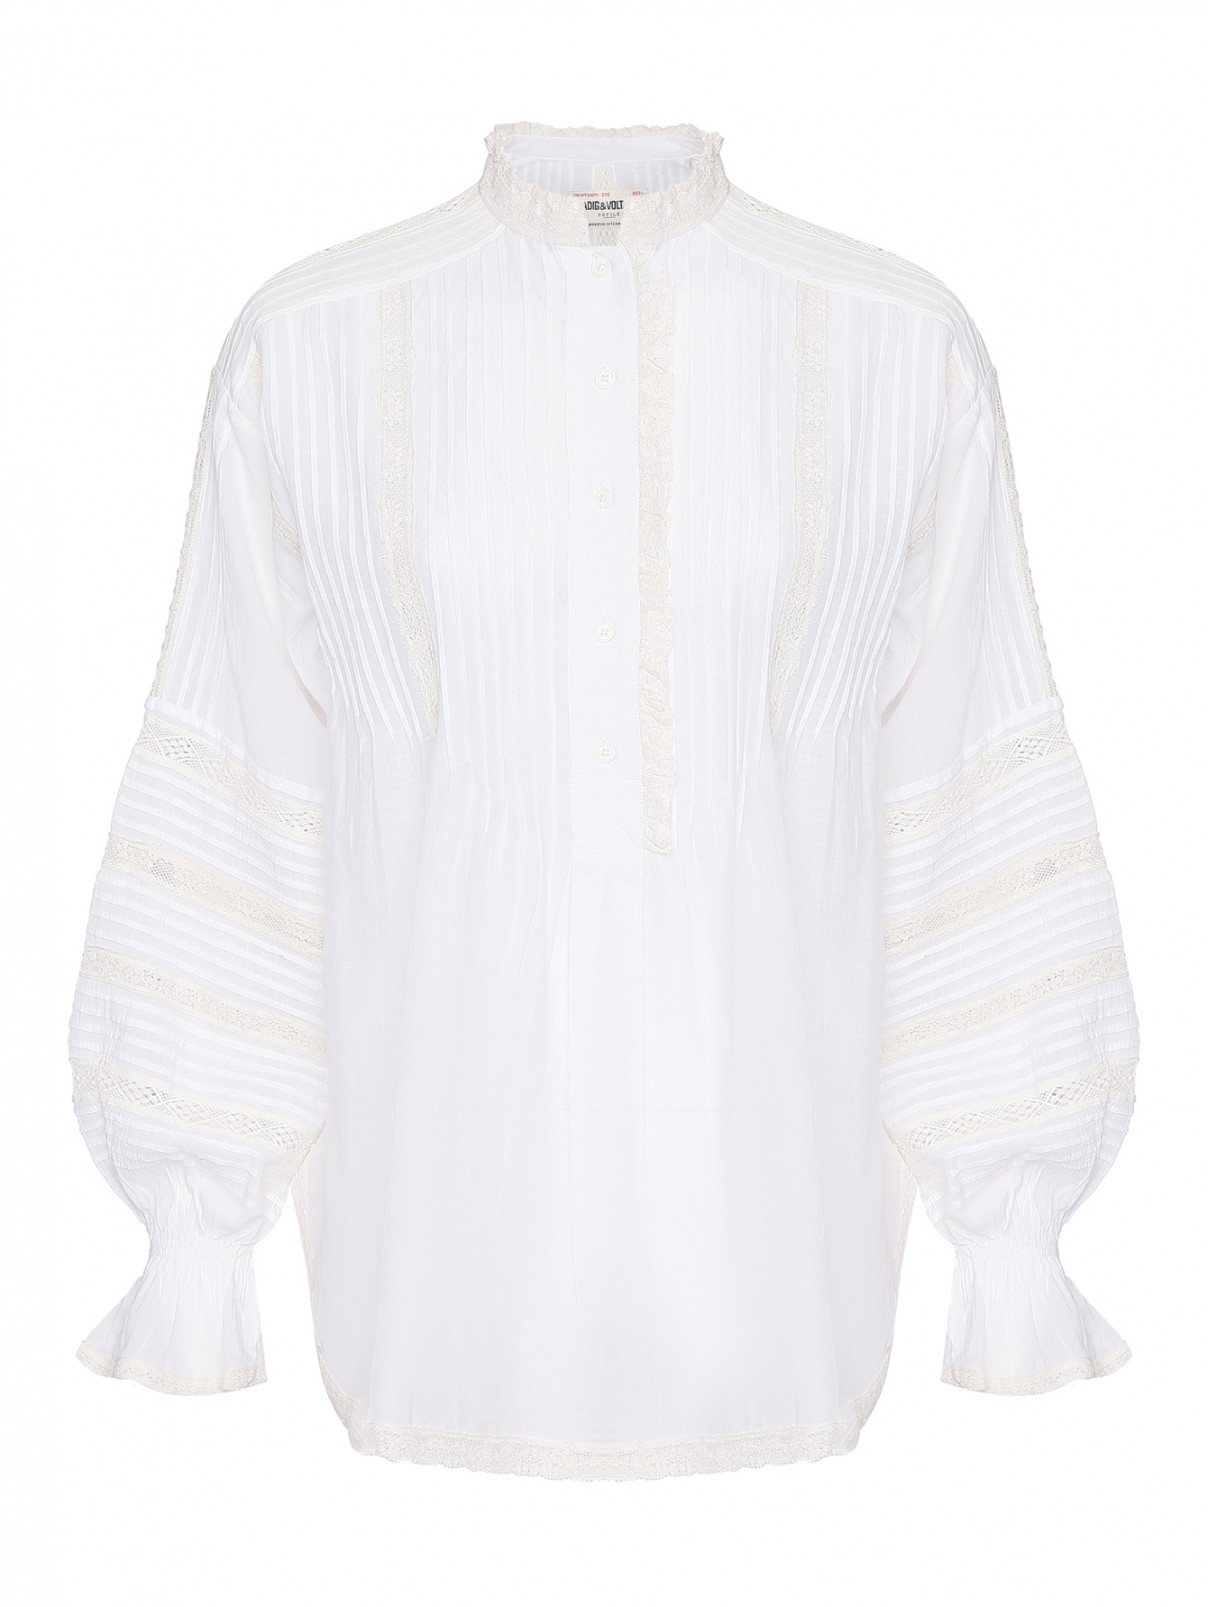 Блуза в бохо стиле с вышивкой Zadig&Voltaire  –  Общий вид  – Цвет:  Белый